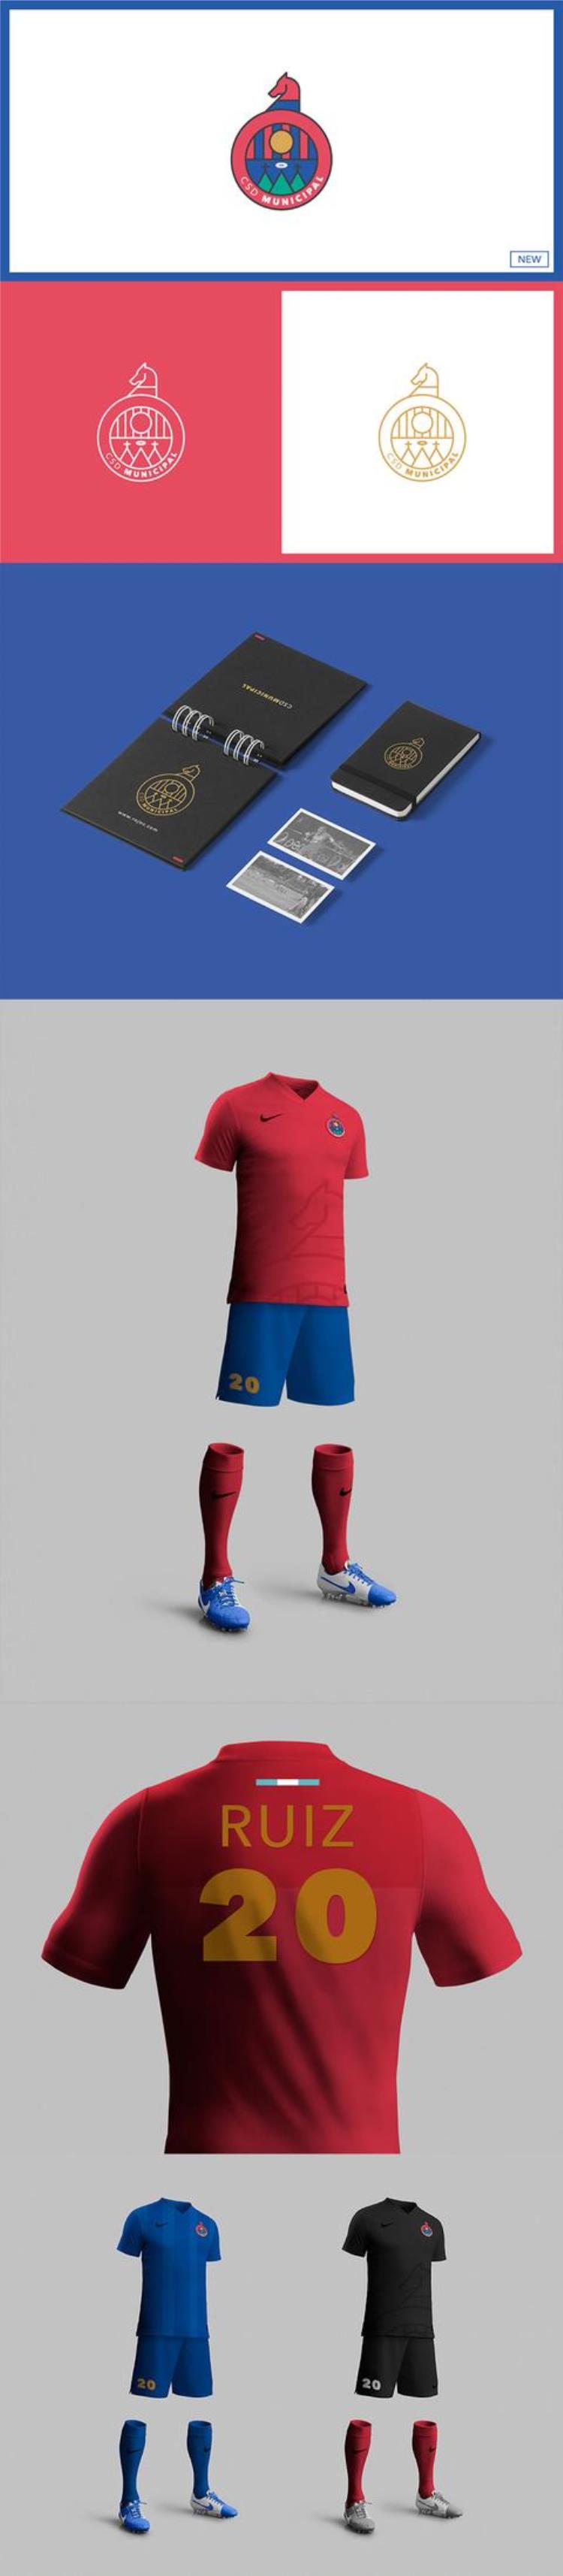 足球队服装什么颜色比较好「52款知名足球俱乐部的品牌及服装配色你喜欢哪家」